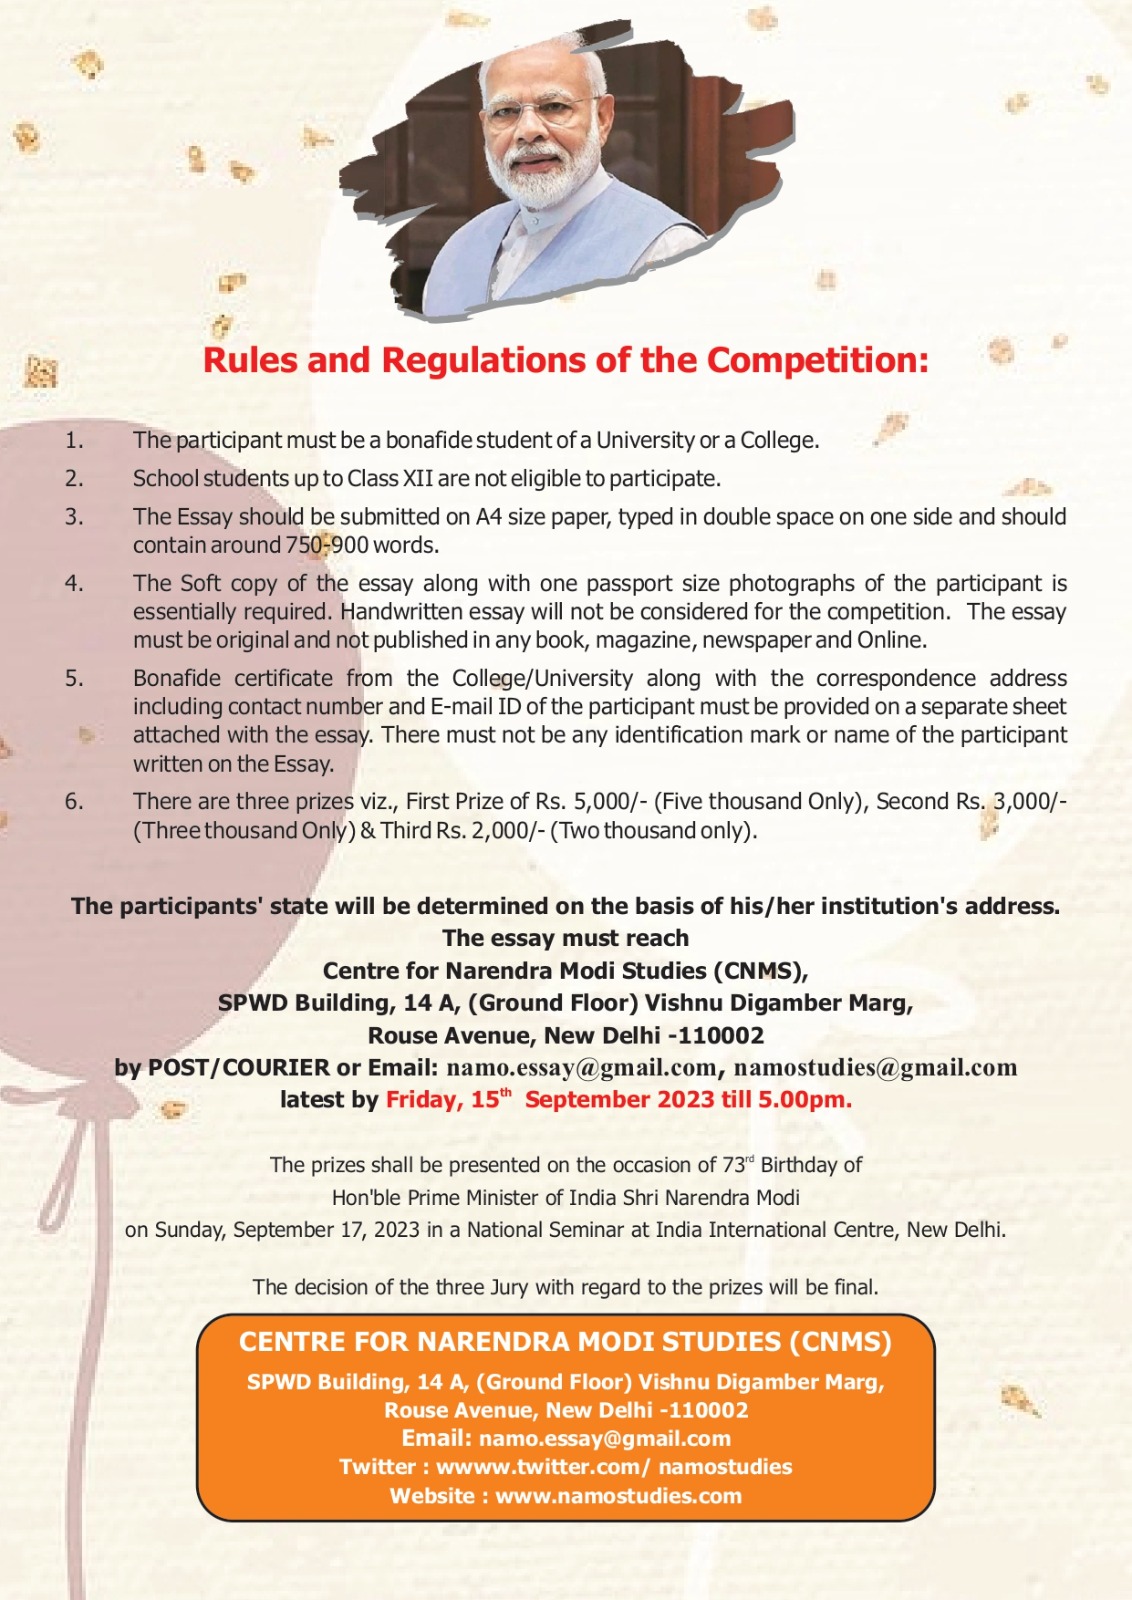 प्रधानमंत्री नरेंद्र मोदी के जन्मदिवस पर निबंध लेखन प्रतियोगिता।